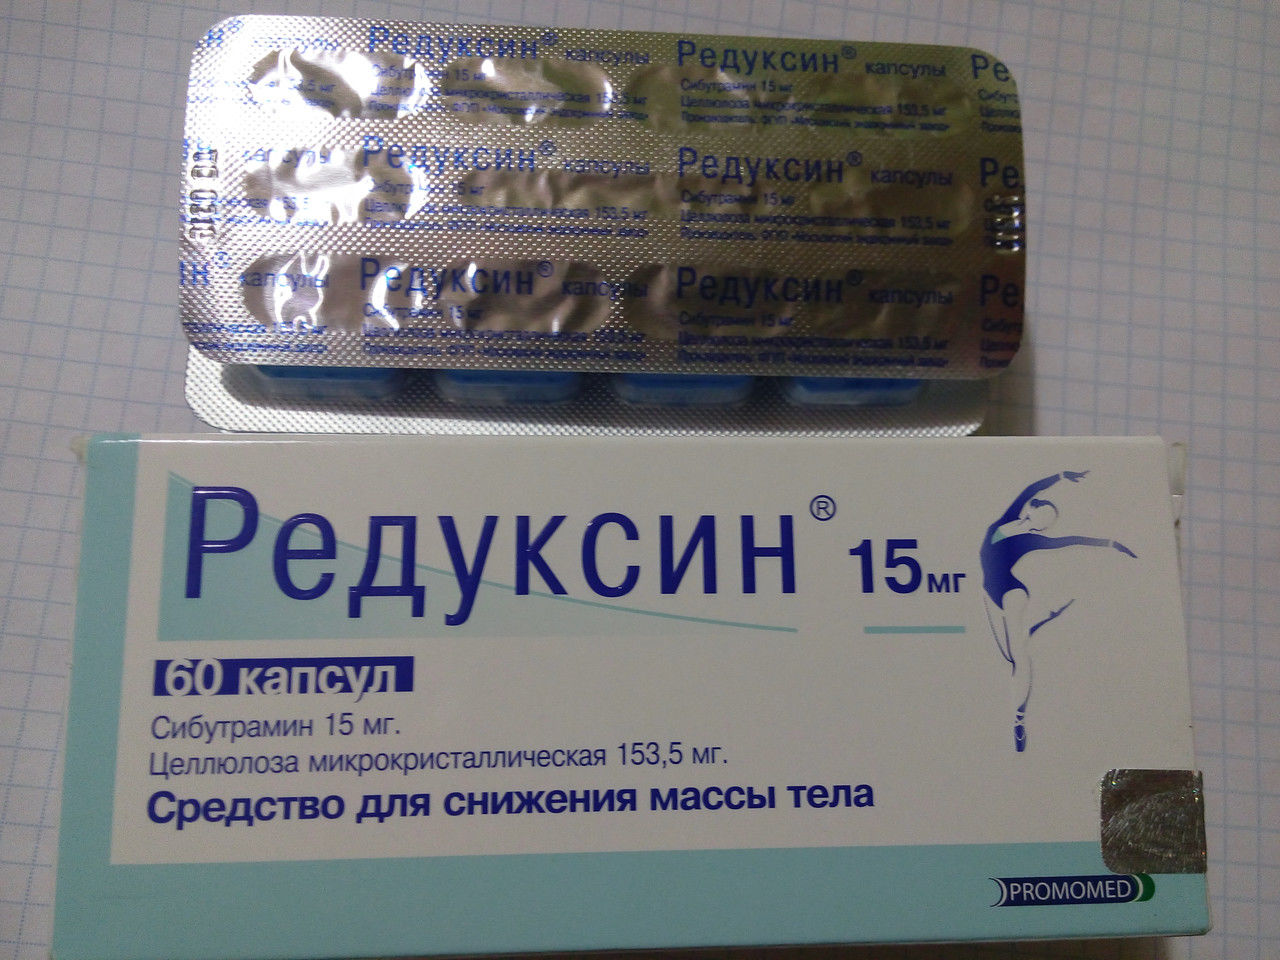 Таблетки Редуксин 60 капсул 15 мг дозировка фото видео изображение